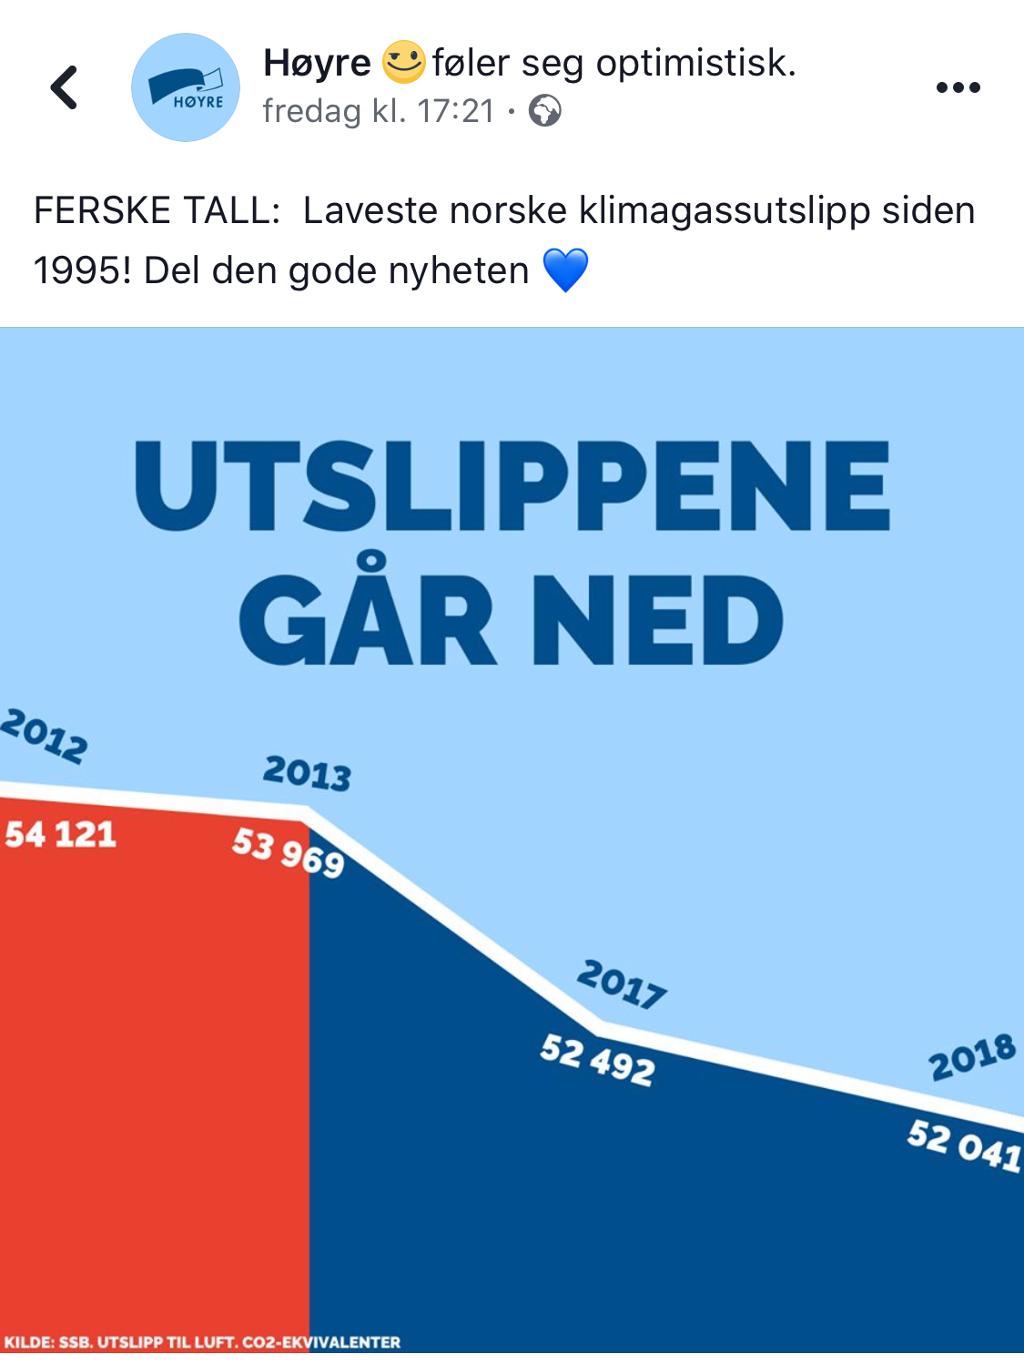 Linjediagram som viser utviklingen i klimagassutslipp i 2012, 2013, 2017 og 2018. Facebook-innlegg fra Høyre med tittelen "Utslippene går ned". Grafikk.